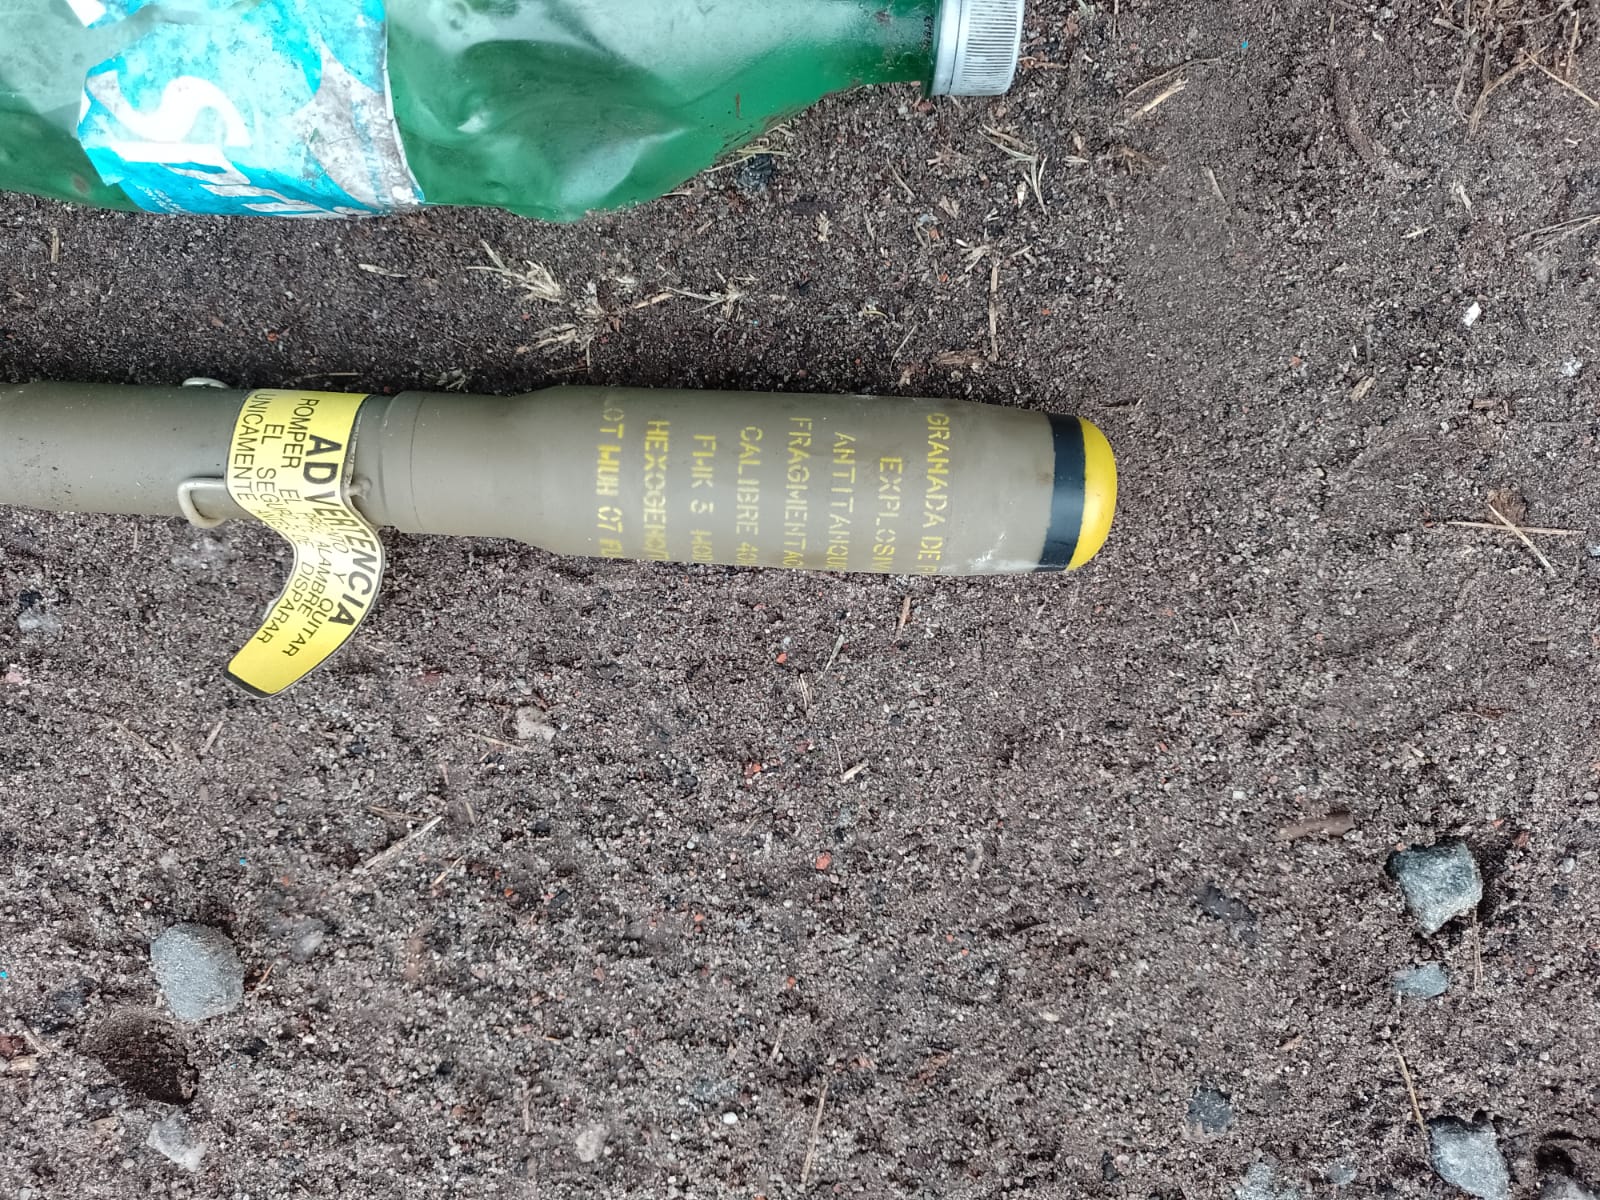 Una de las granadas encontradas.